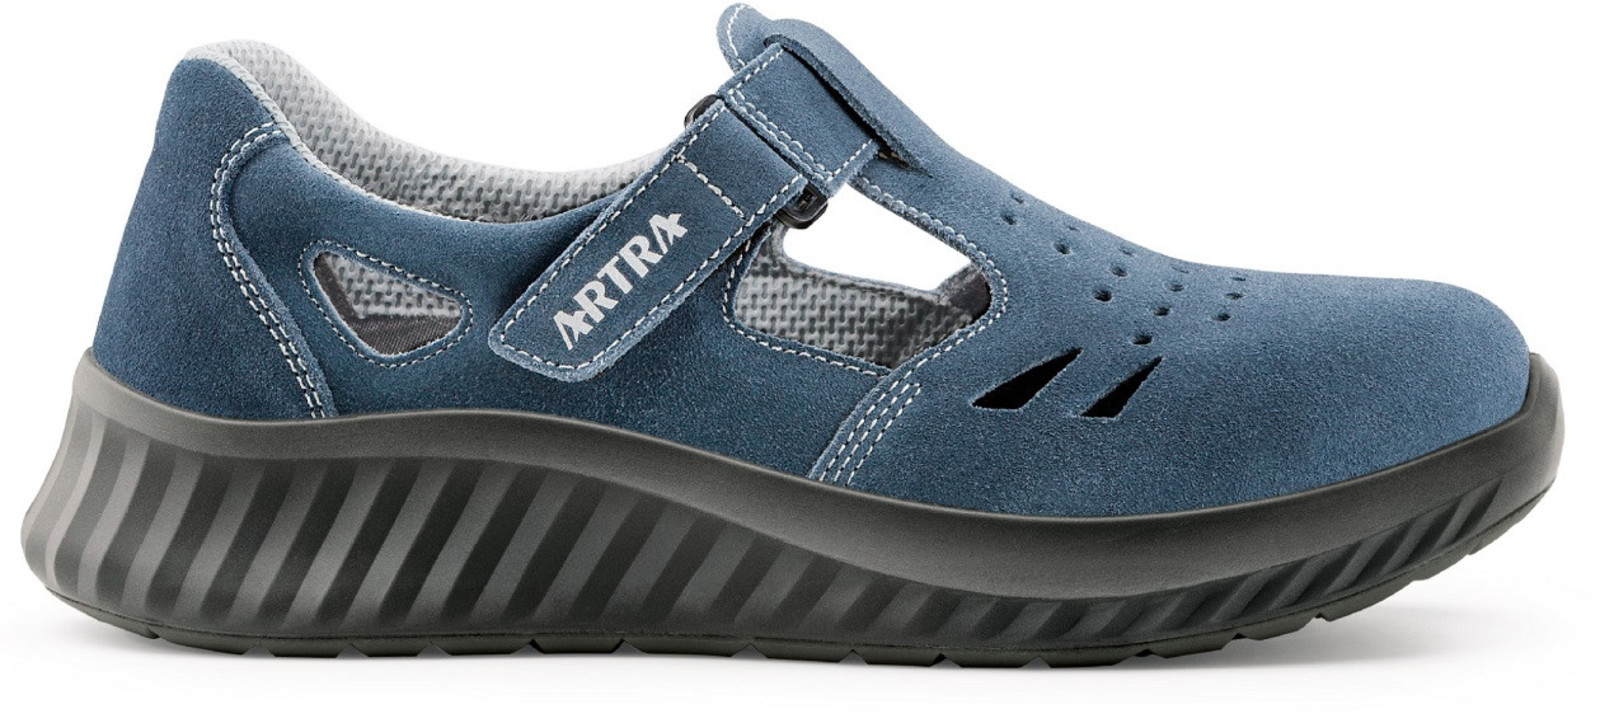 Bezpečnostné sandále Artra Armen 9007 9360 S1 - veľkosť: 39, farba: modrá